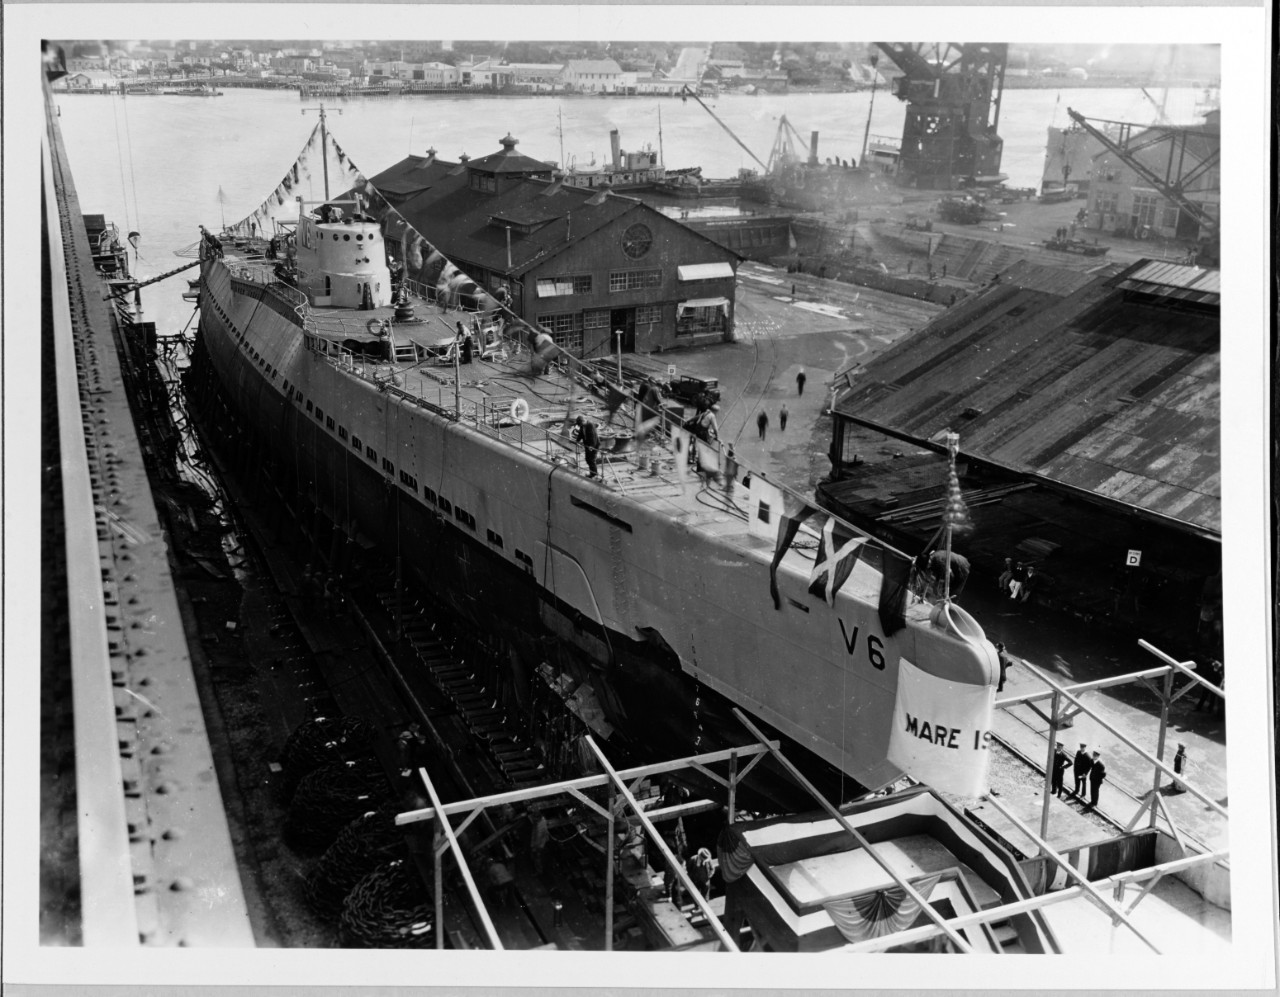 USS NAUTILUS (SS-168), ex V-6